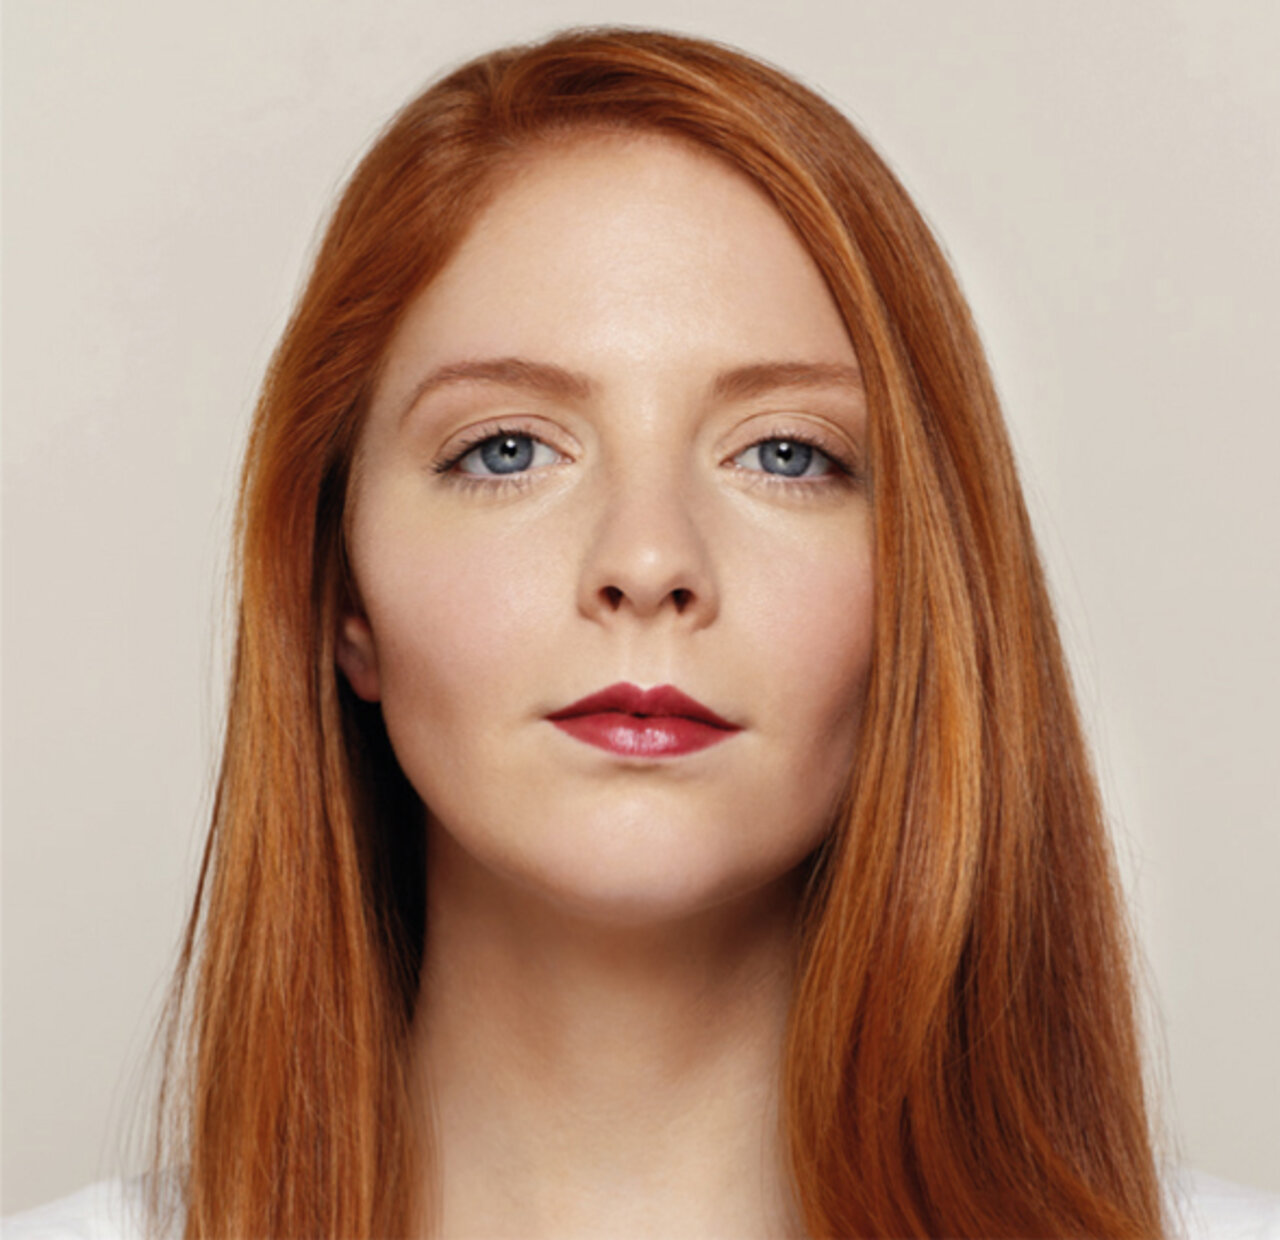 Portrait einer jungen Frau mit einem rostroten Lippenstift, die einen keltischen Typ mit roten Haaren und kühlen Hautton repräsentiert